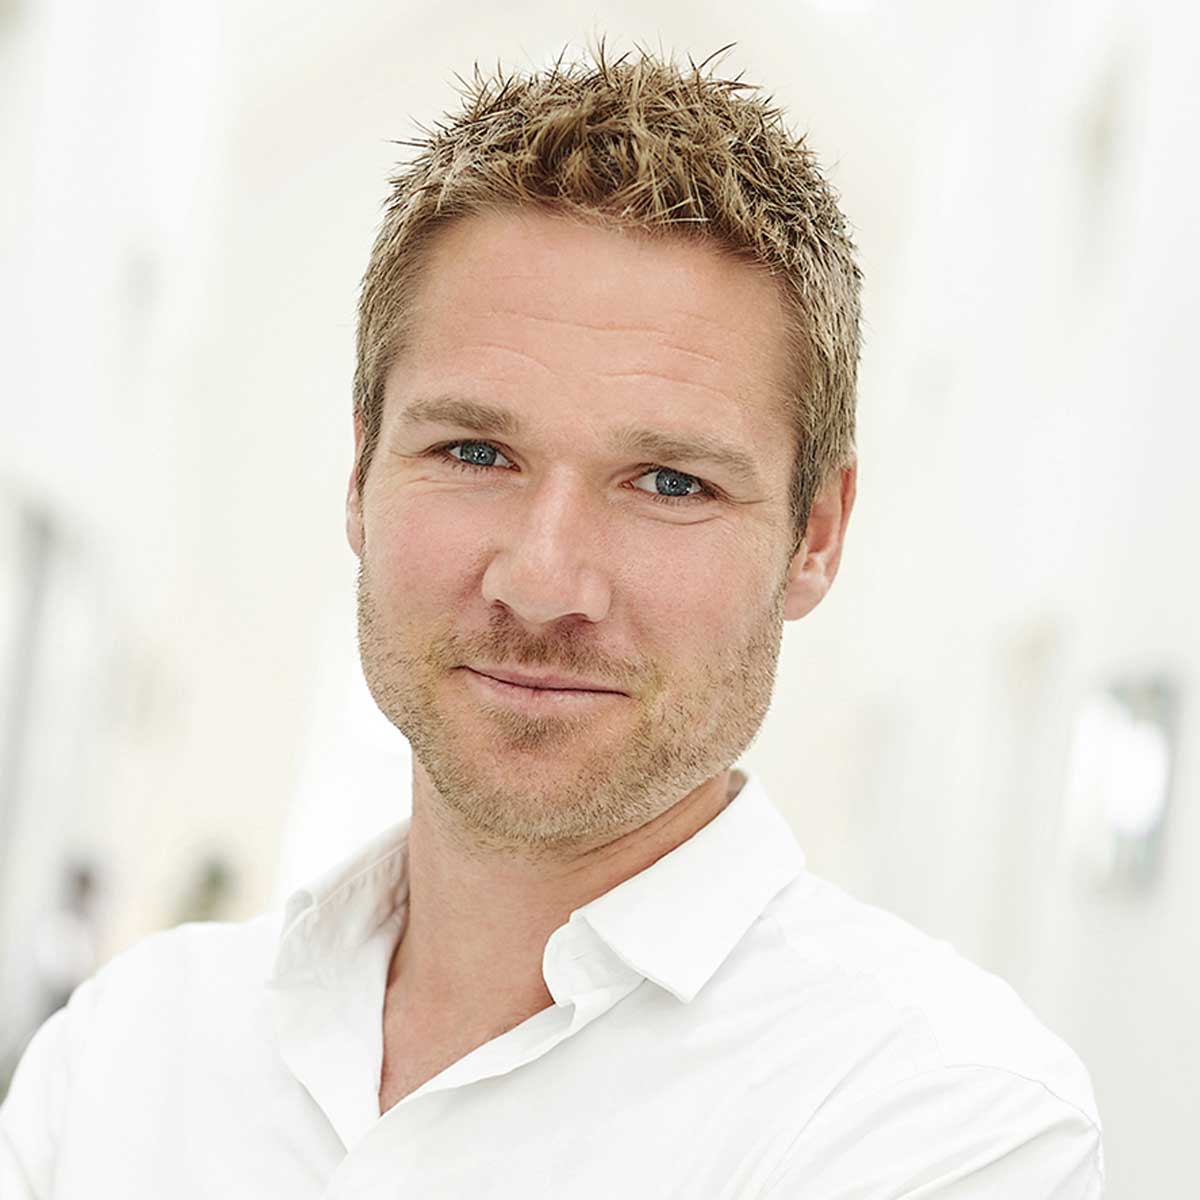 Business Lolland Falster Anders Due Forretningschef Startup & Iværksætteri